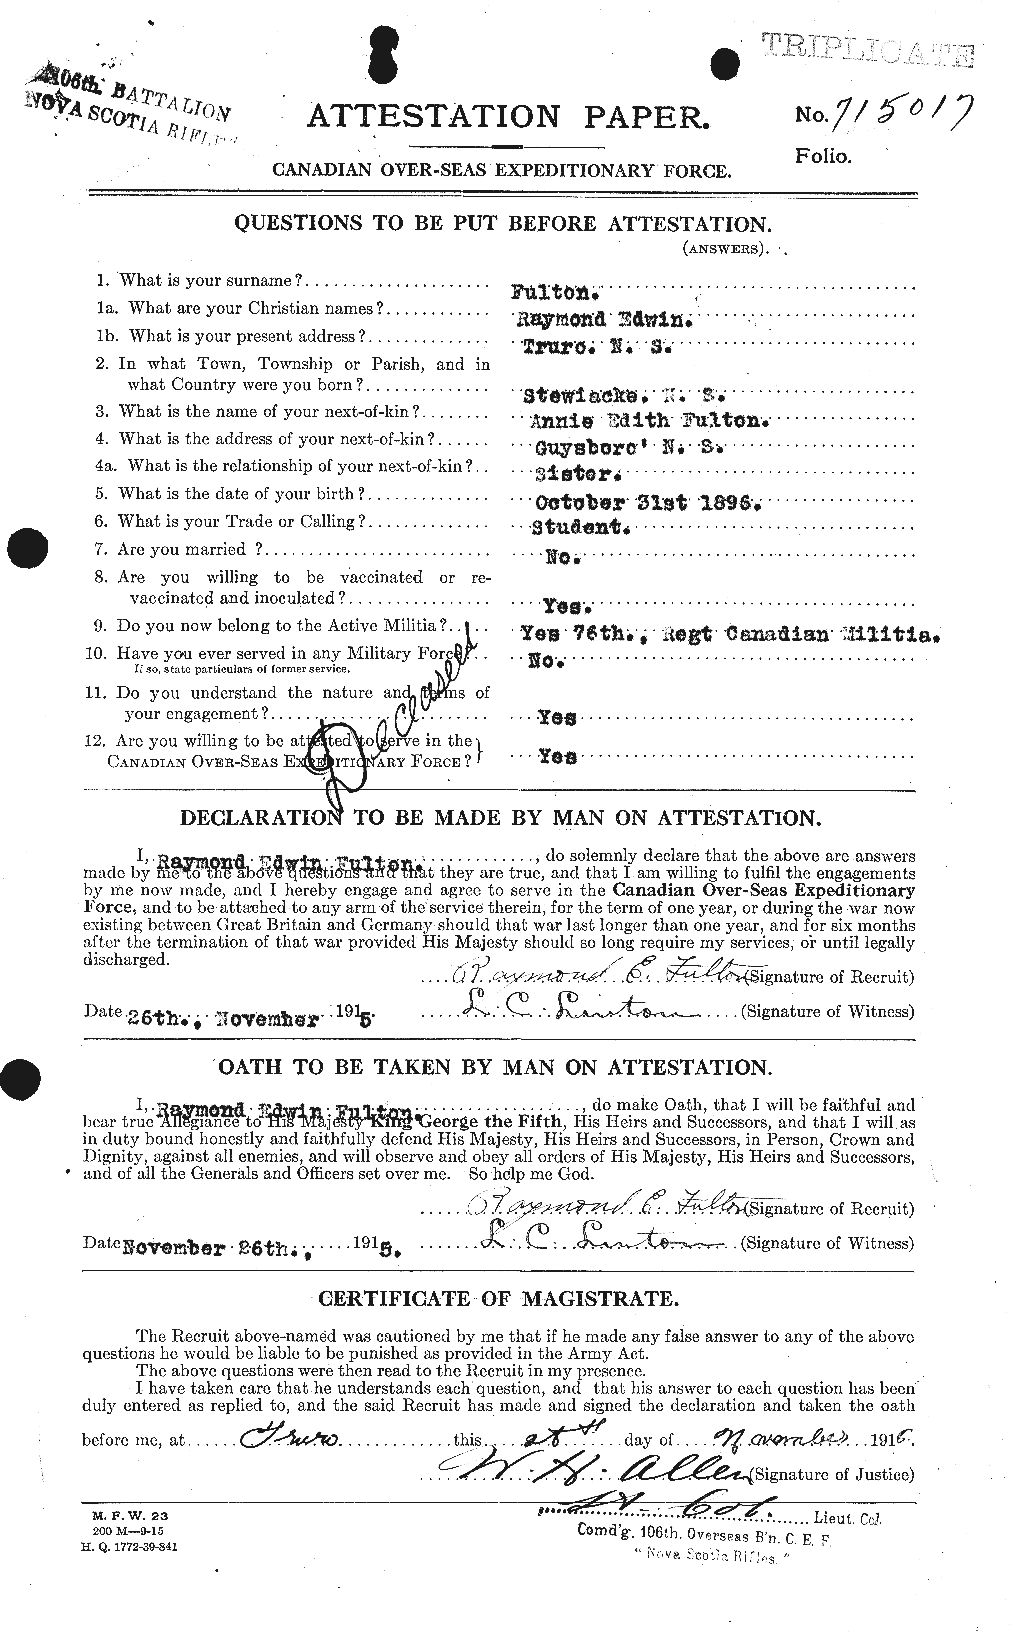 Dossiers du Personnel de la Première Guerre mondiale - CEC 341428a